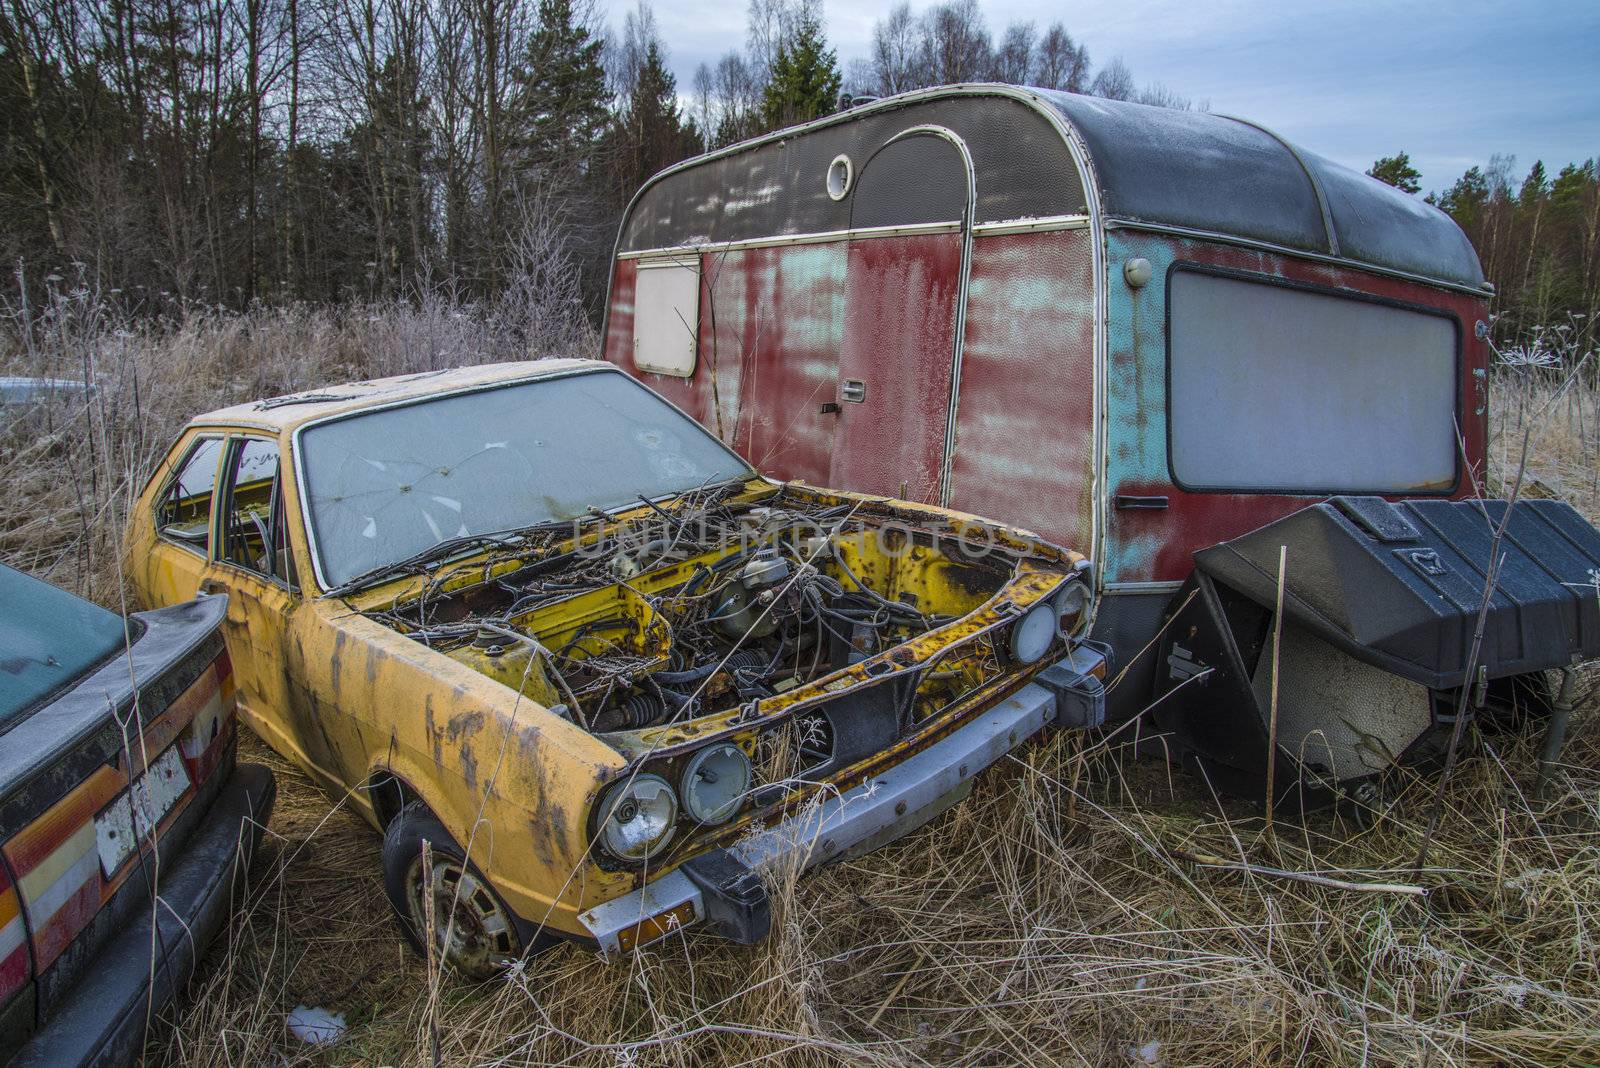 scrapyard for cars (wrecks car) by steirus